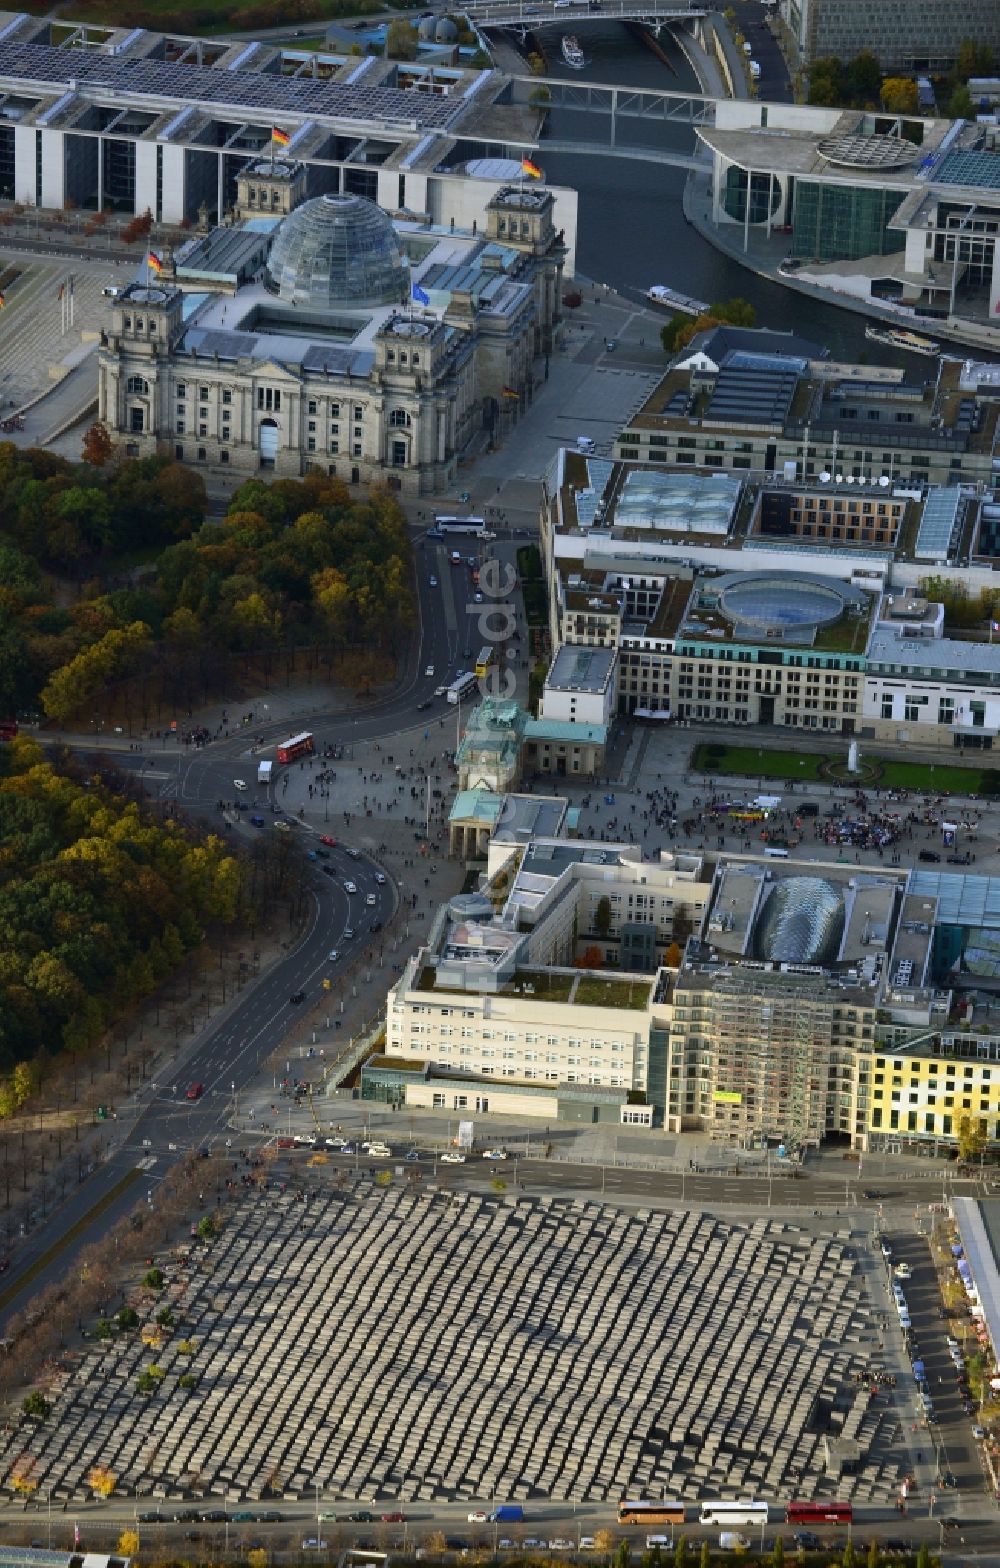 Luftaufnahme Berlin - Sehenswürdigkeit und Wahrzeichen Brandenburger Tor am Pariser Platz im Ortsteil Mitte von Berlin